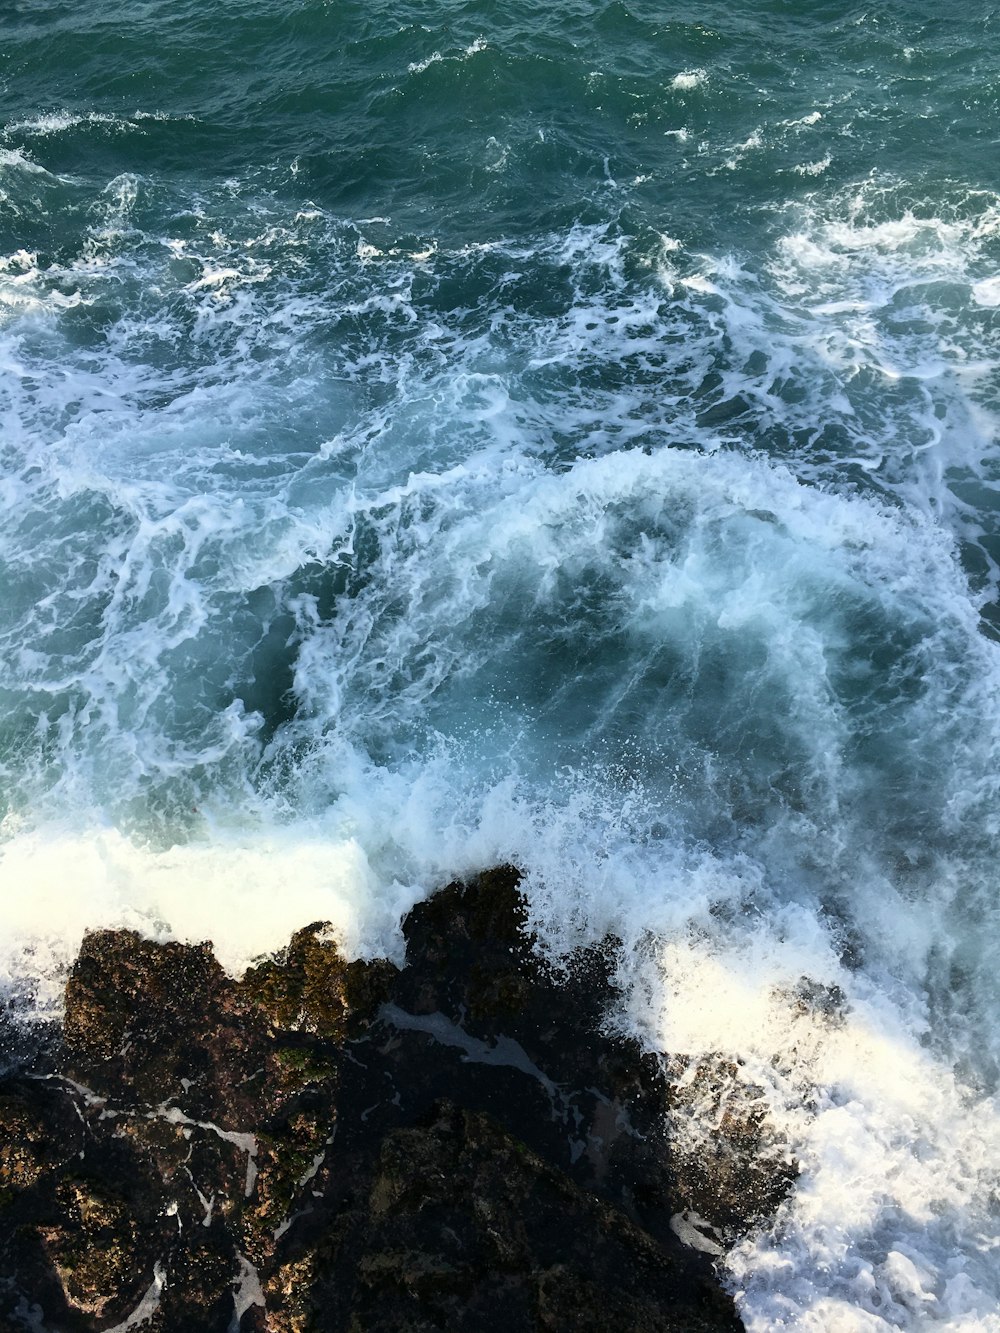 岩に打ち寄せる波